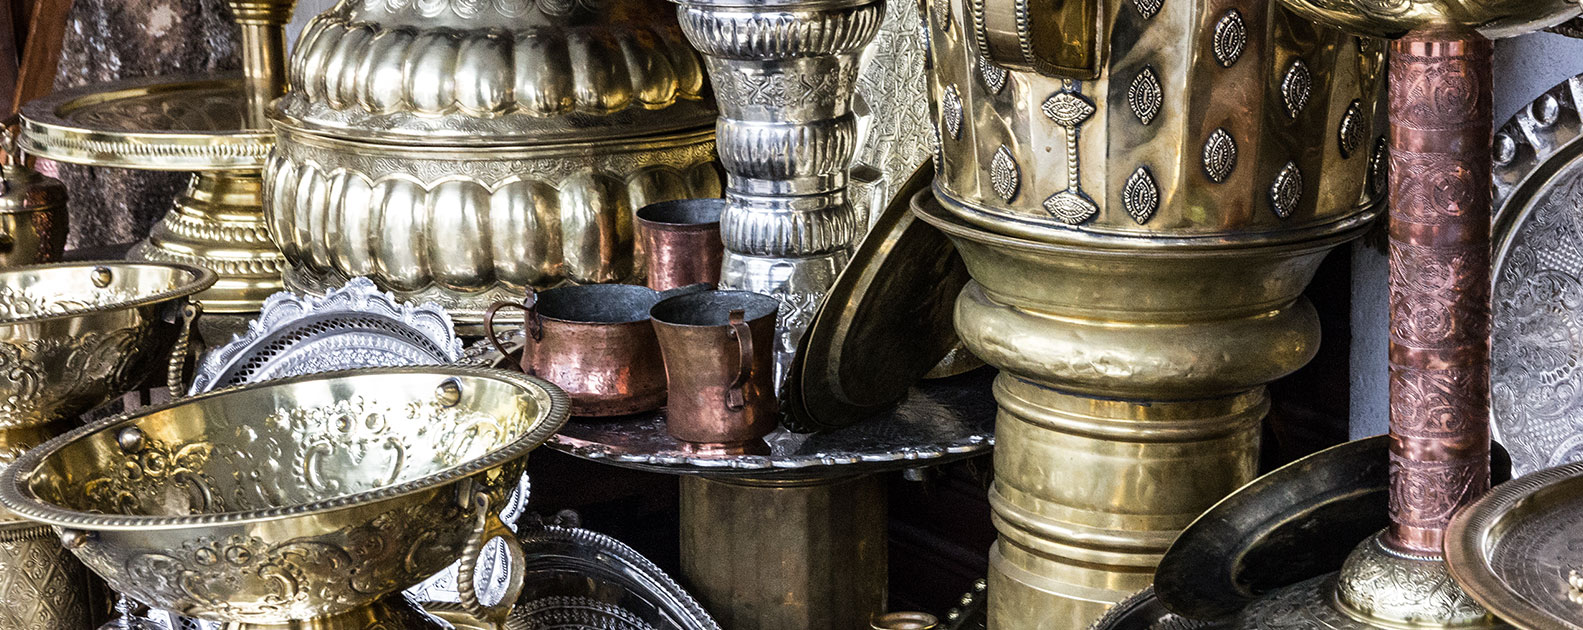 Metal utensil stamping on Moroccan market